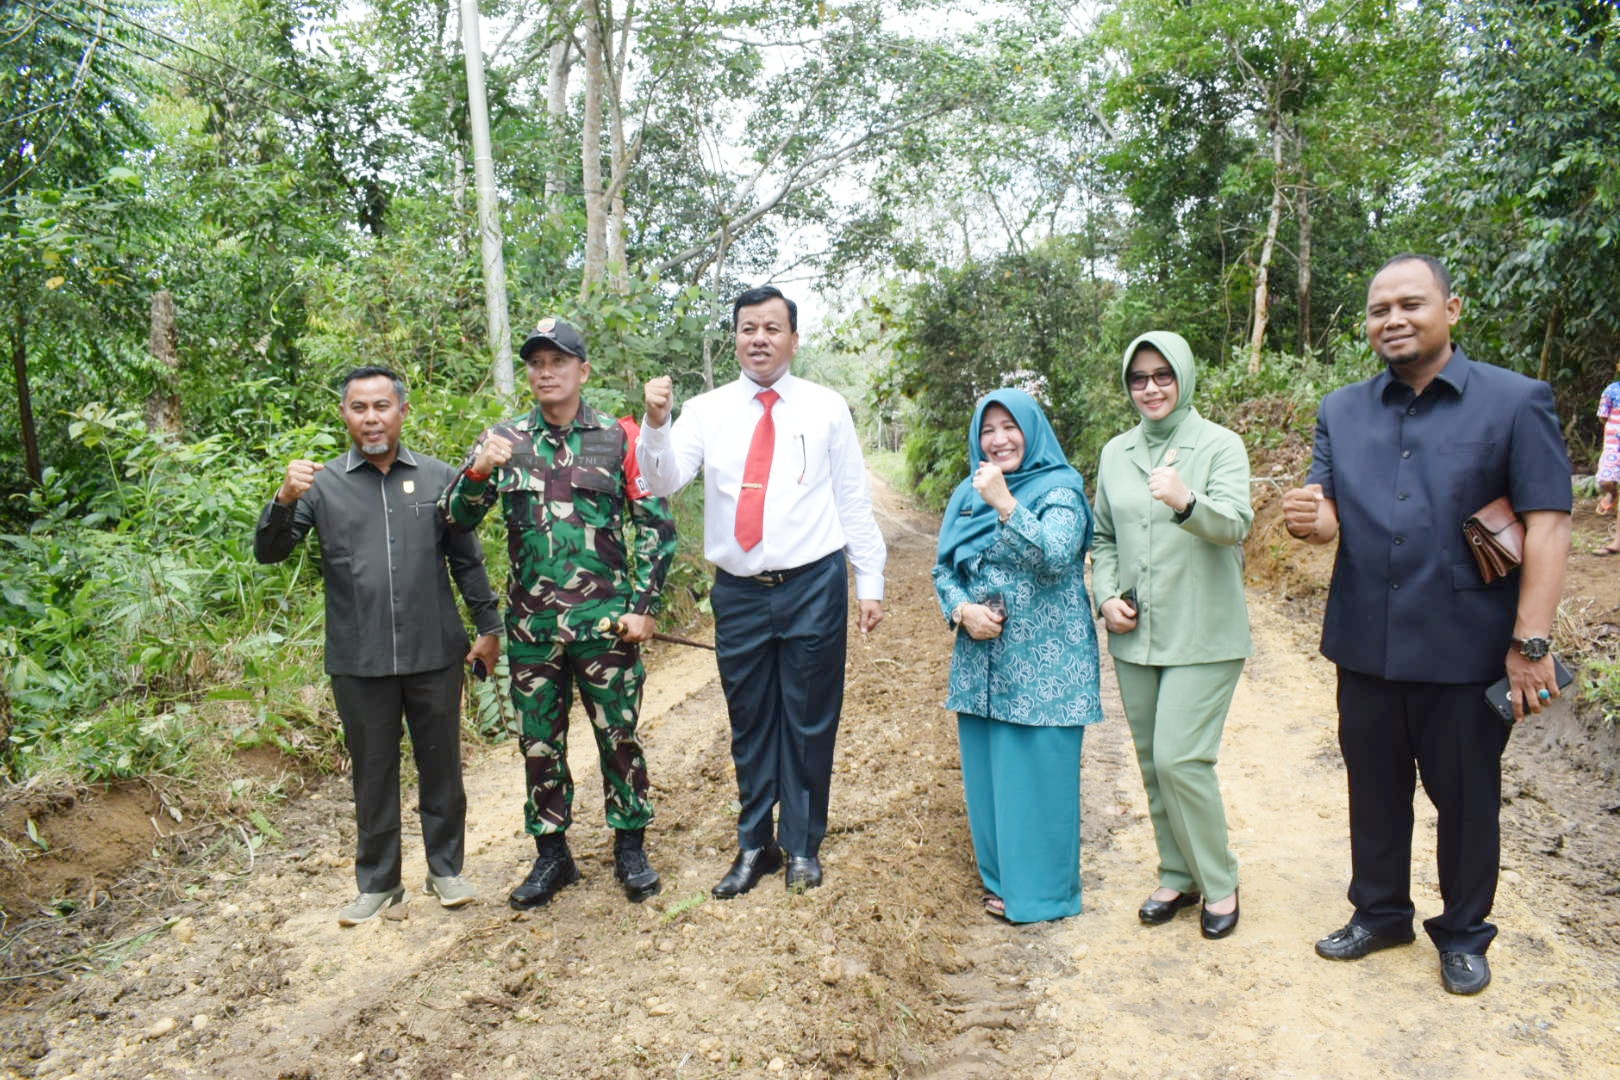 Plt Suhardiman Amby, Hj Yulia Herma Melalui Program TNI Manunggal Membangun Desa Di Inuman